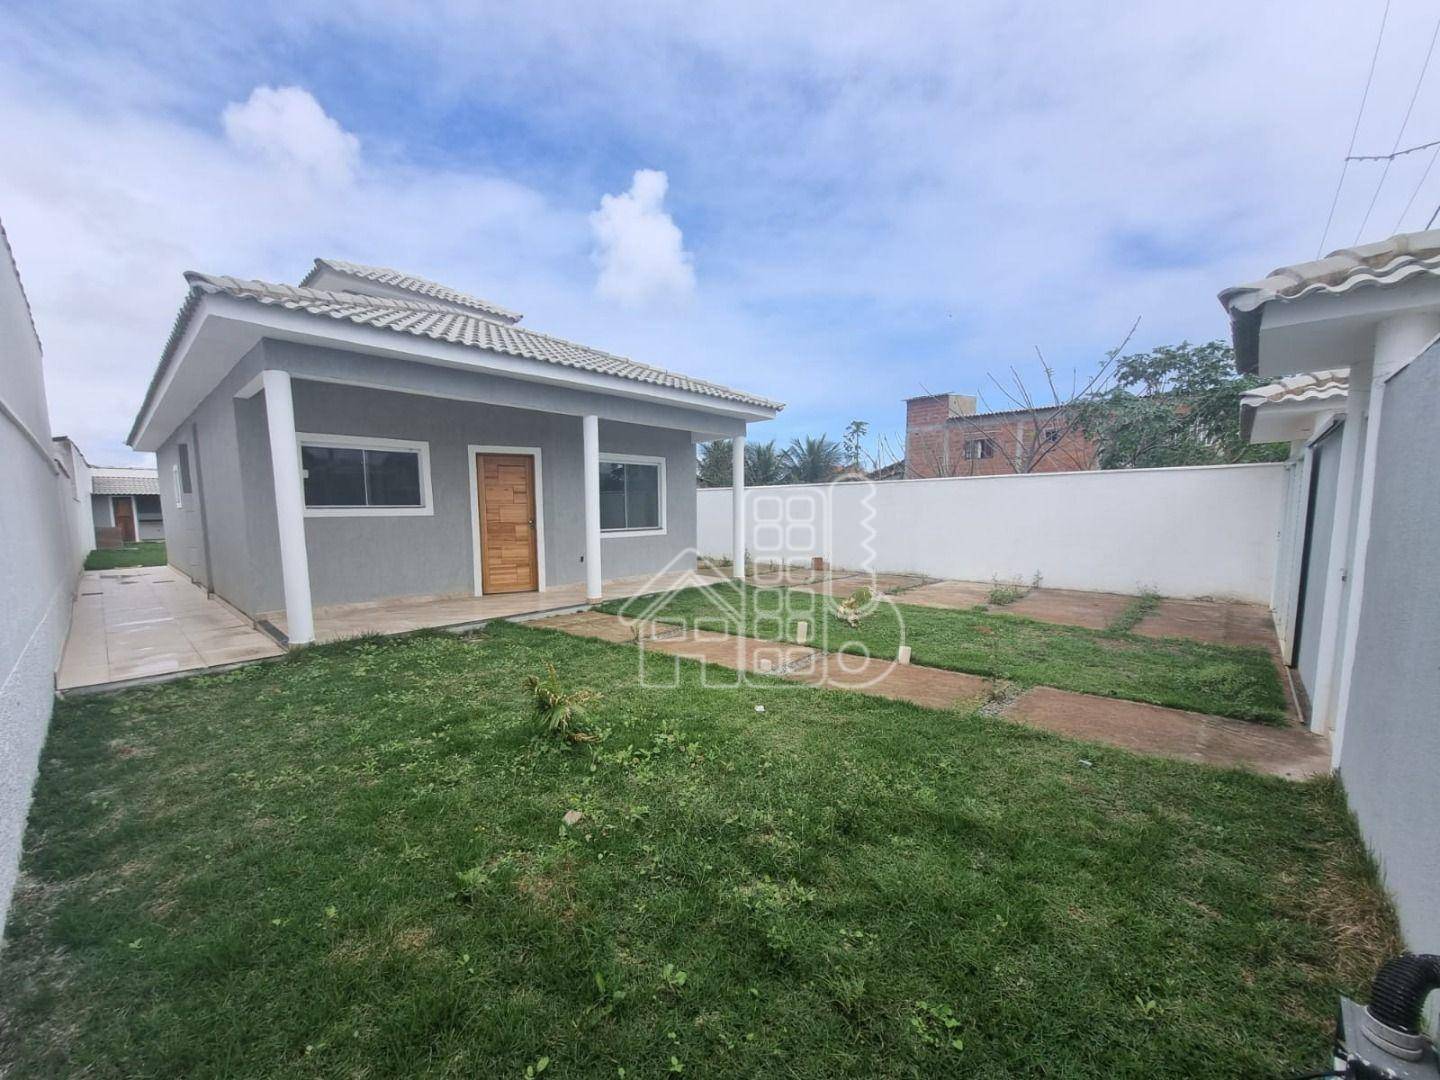 Casa com 3 dormitórios à venda, 100 m² por R$ 580.000,90 - Jardim Atlântico Central (Itaipuaçu) - Maricá/RJ